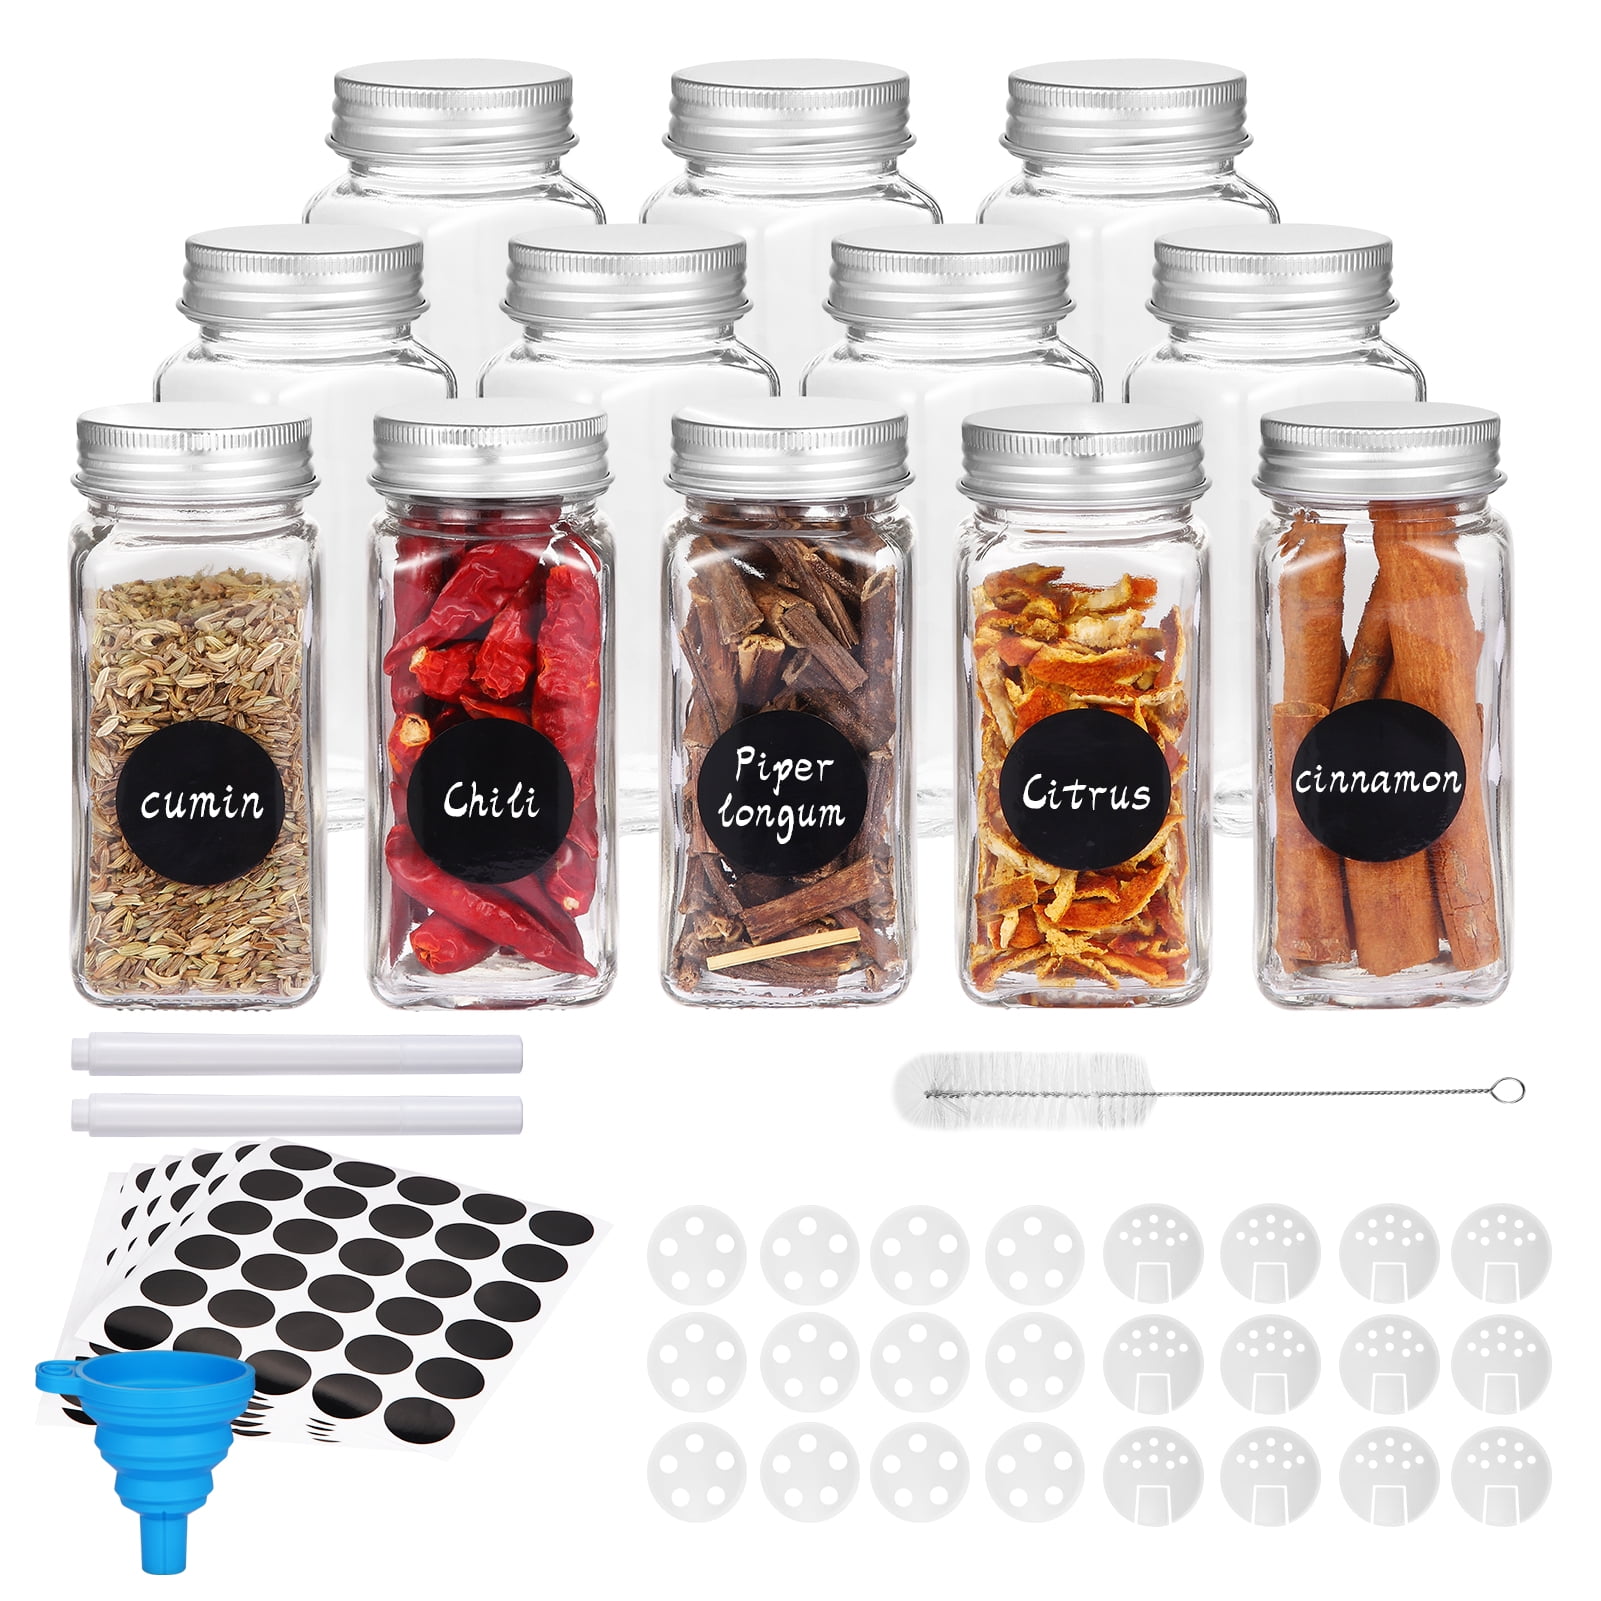 12 Pcs Glass Spice Jars/bottles - 4oz Empty Square Spice